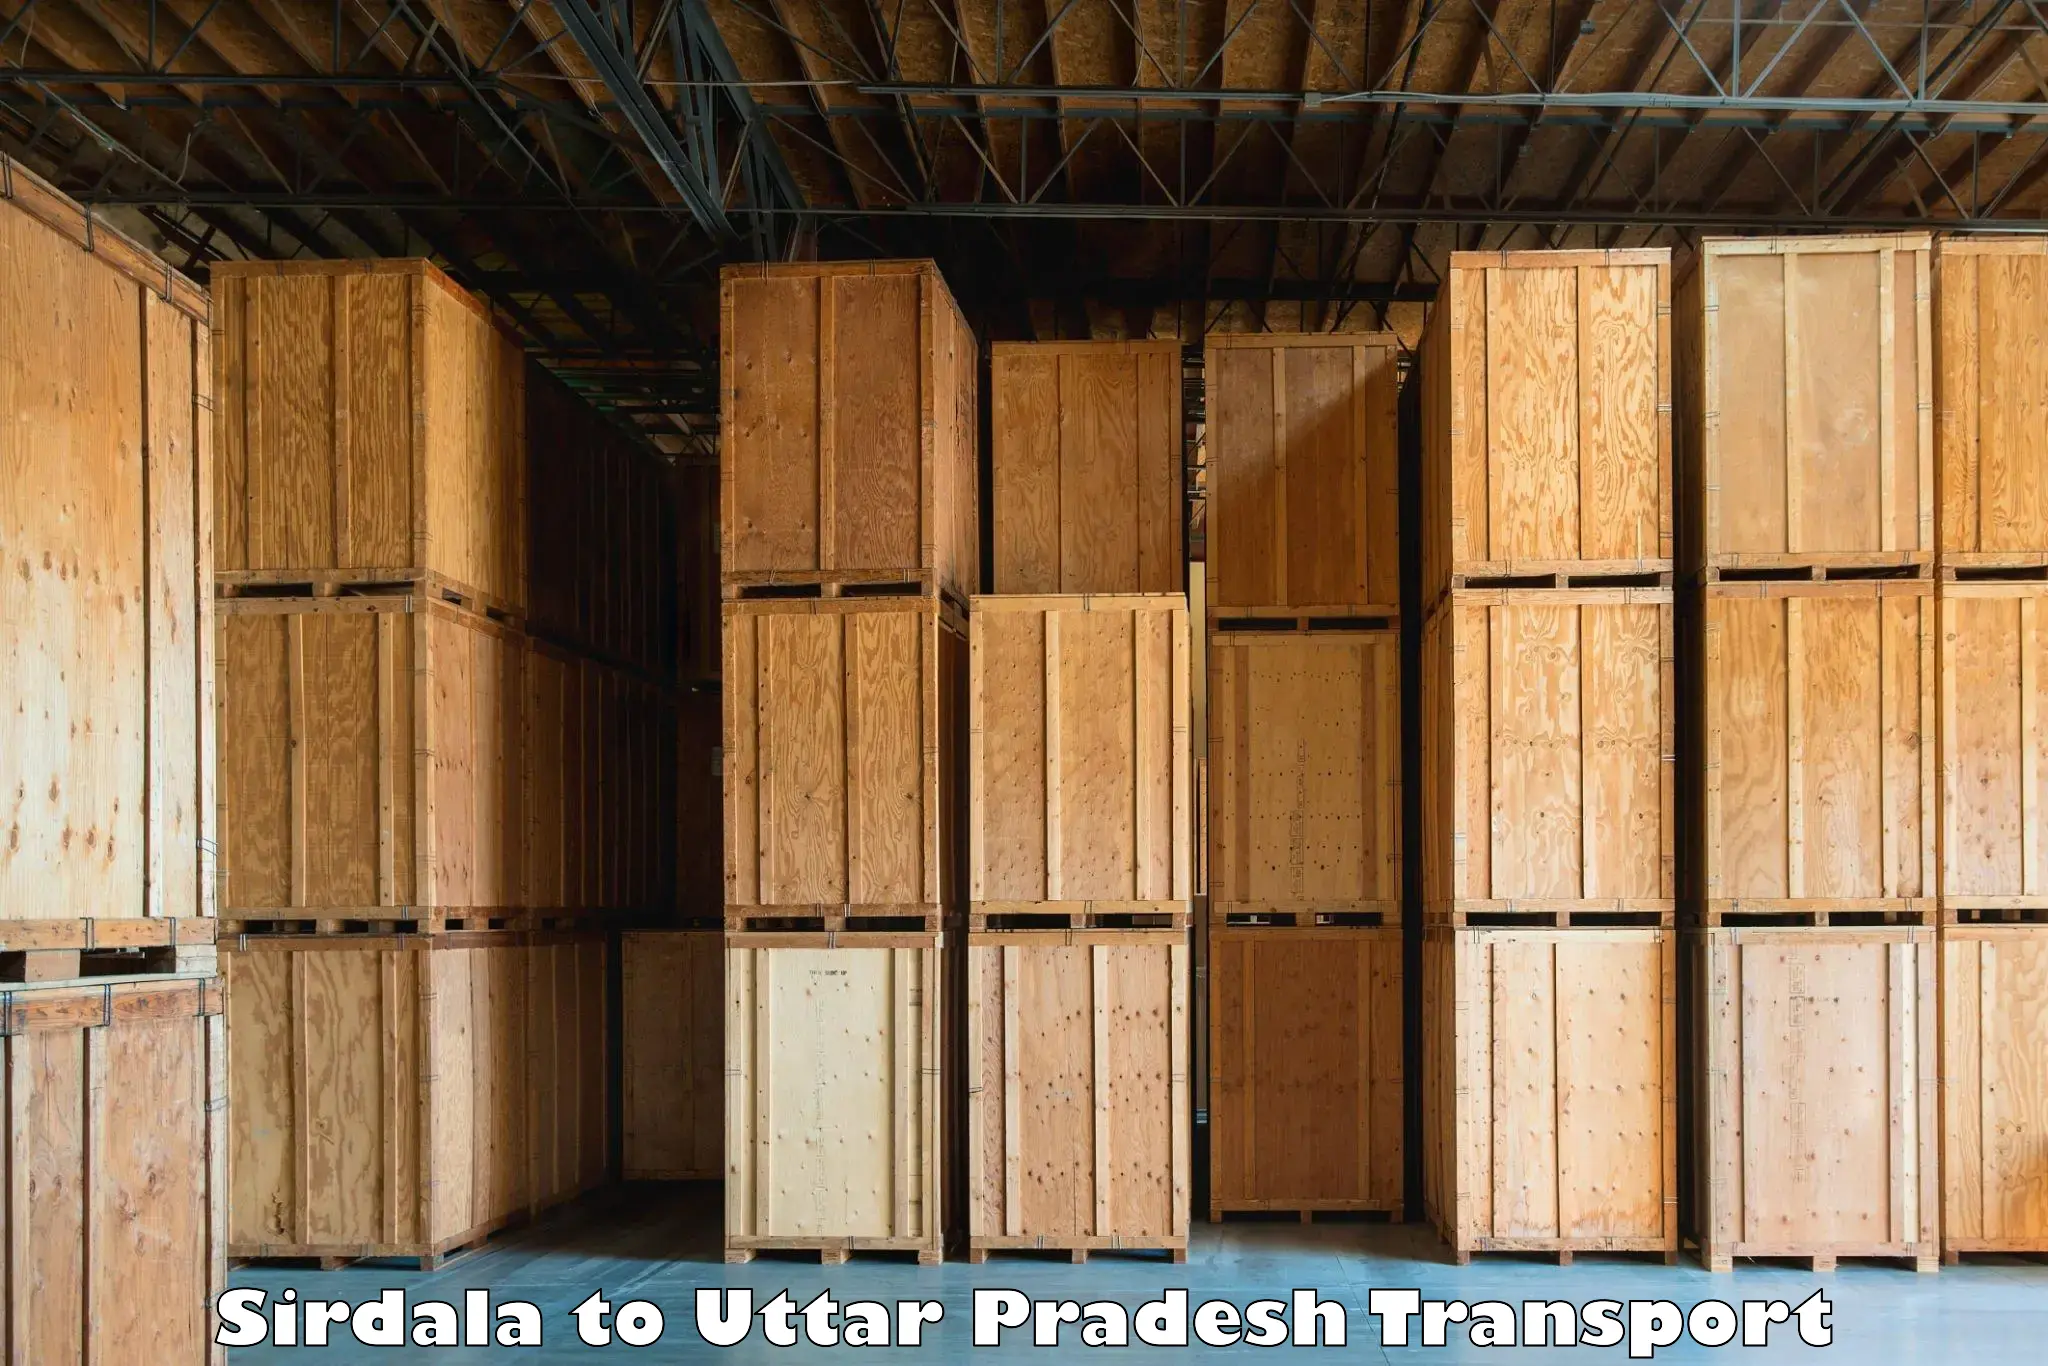 Furniture transport service Sirdala to Katghar Lalganj